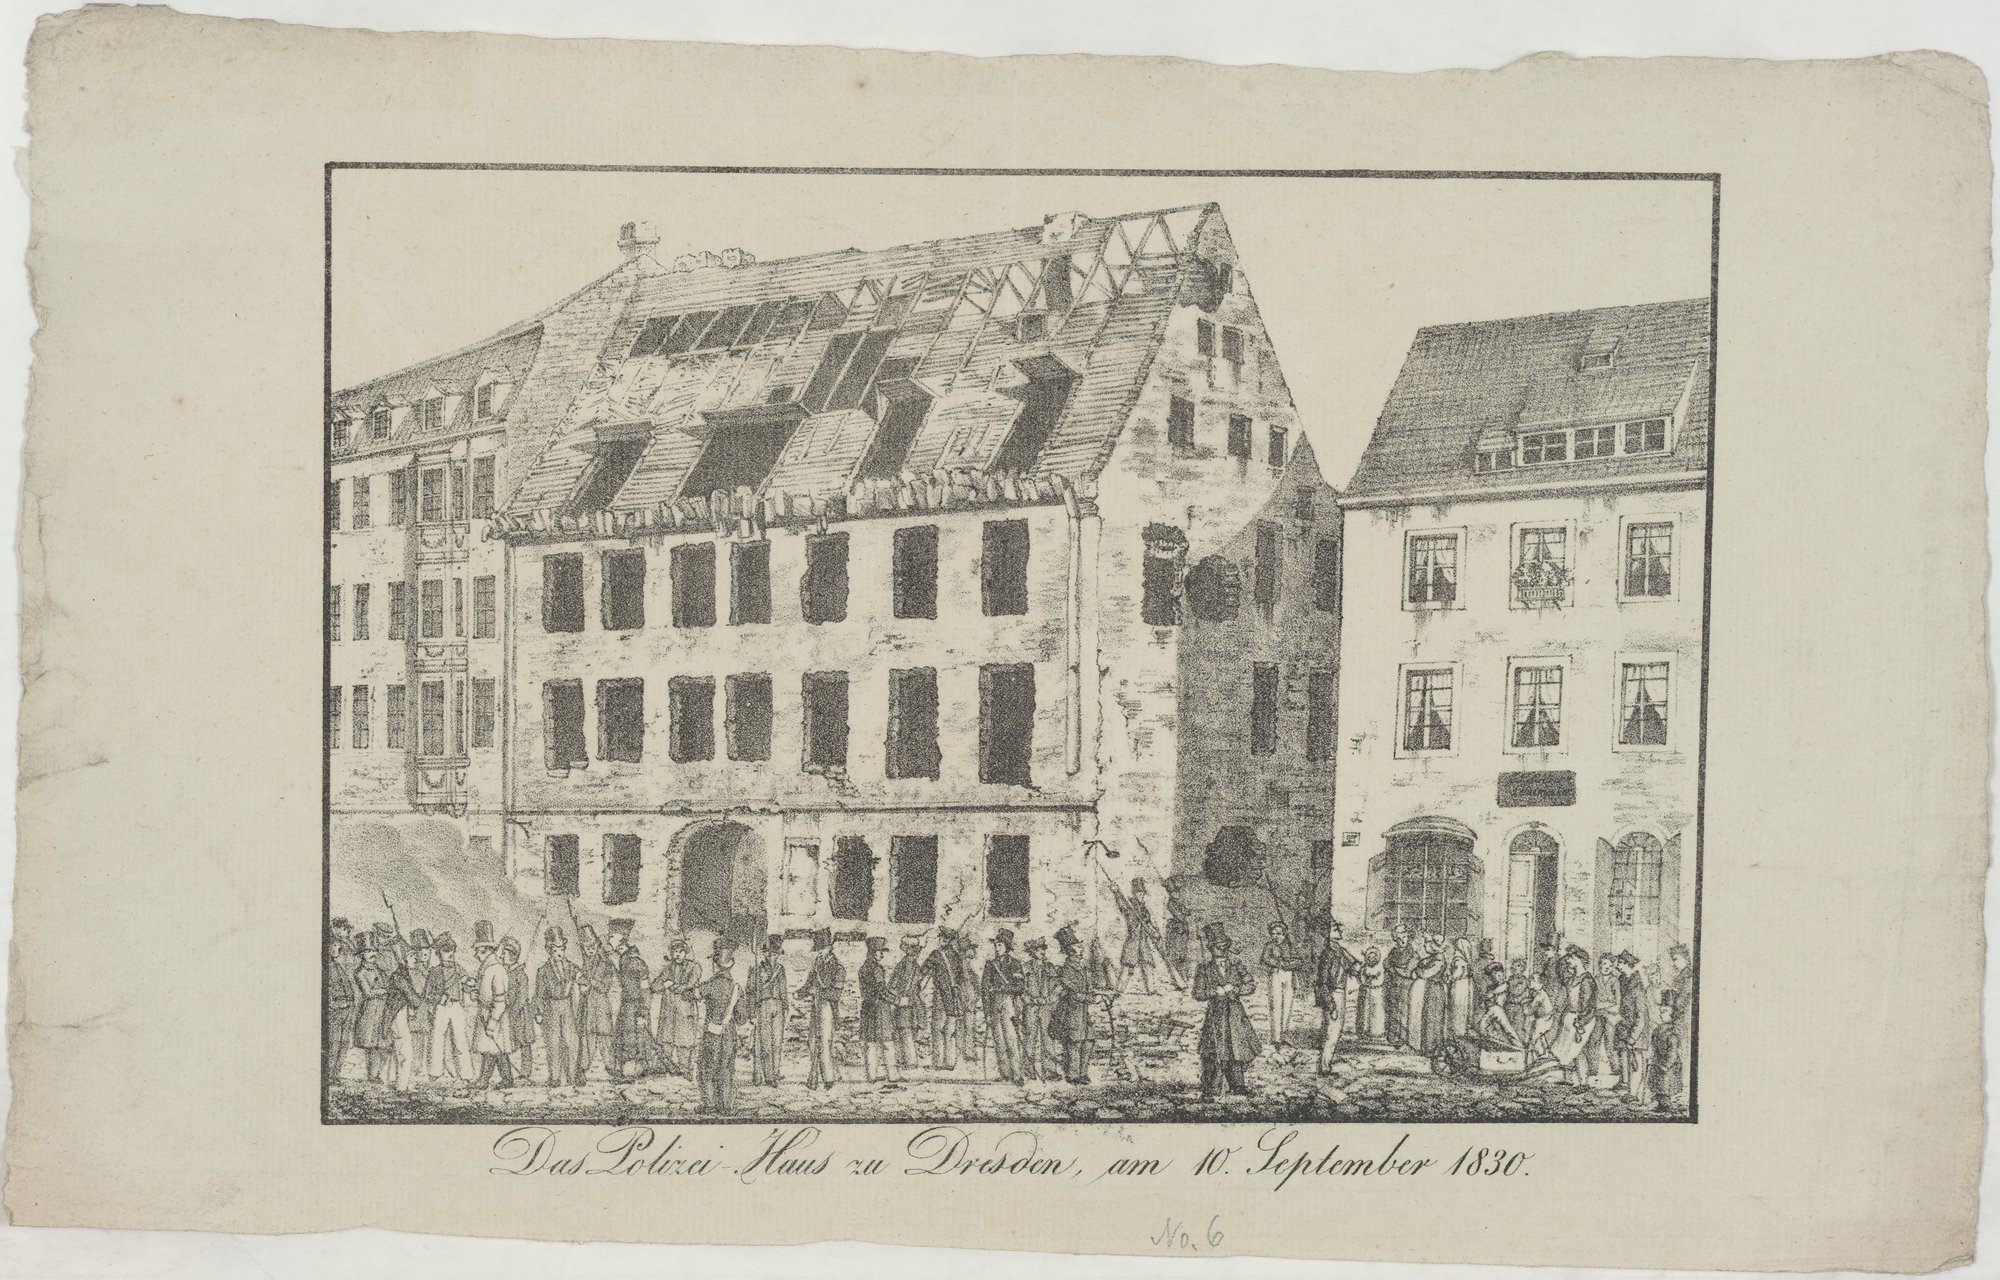 Das Polizei-Haus zu Dresden, am 10. September 1830. (Kulturstiftung Sachsen-Anhalt Public Domain Mark)